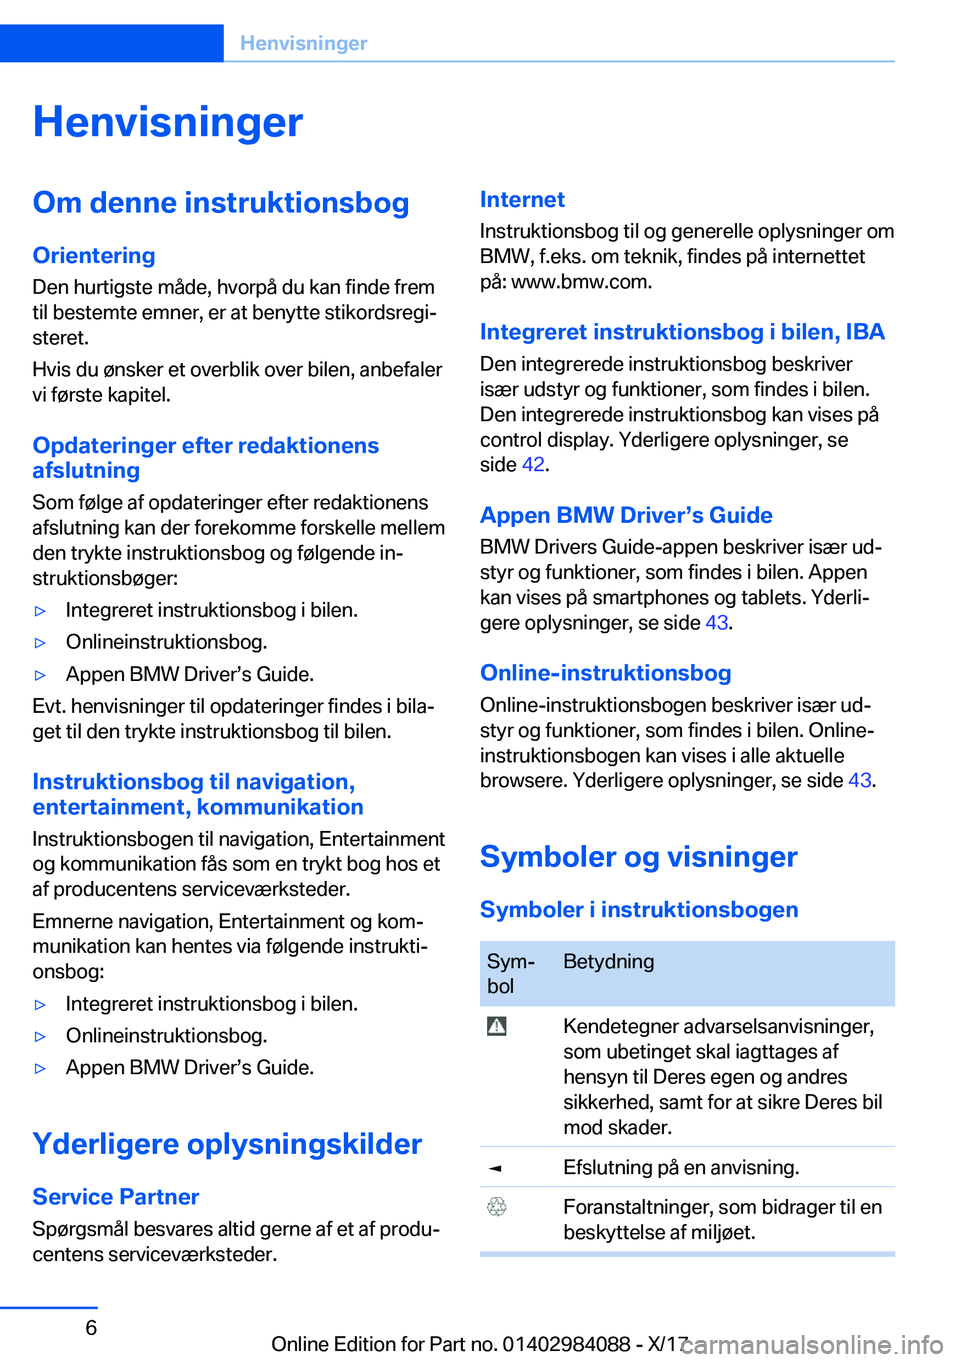 BMW 3 SERIES 2018  InstruktionsbØger (in Danish) �H�e�n�v�i�s�n�i�n�g�e�r�O�m��d�e�n�n�e��i�n�s�t�r�u�k�t�i�o�n�s�b�o�g
�O�r�i�e�n�t�e�r�i�n�g �D�e�n� �h�u�r�t�i�g�s�t�e� �m�å�d�e�,� �h�v�o�r�p�å� �d�u� �k�a�n� �f�i�n�d�e� �f�r�e�m�t�i�l� �b�e�s